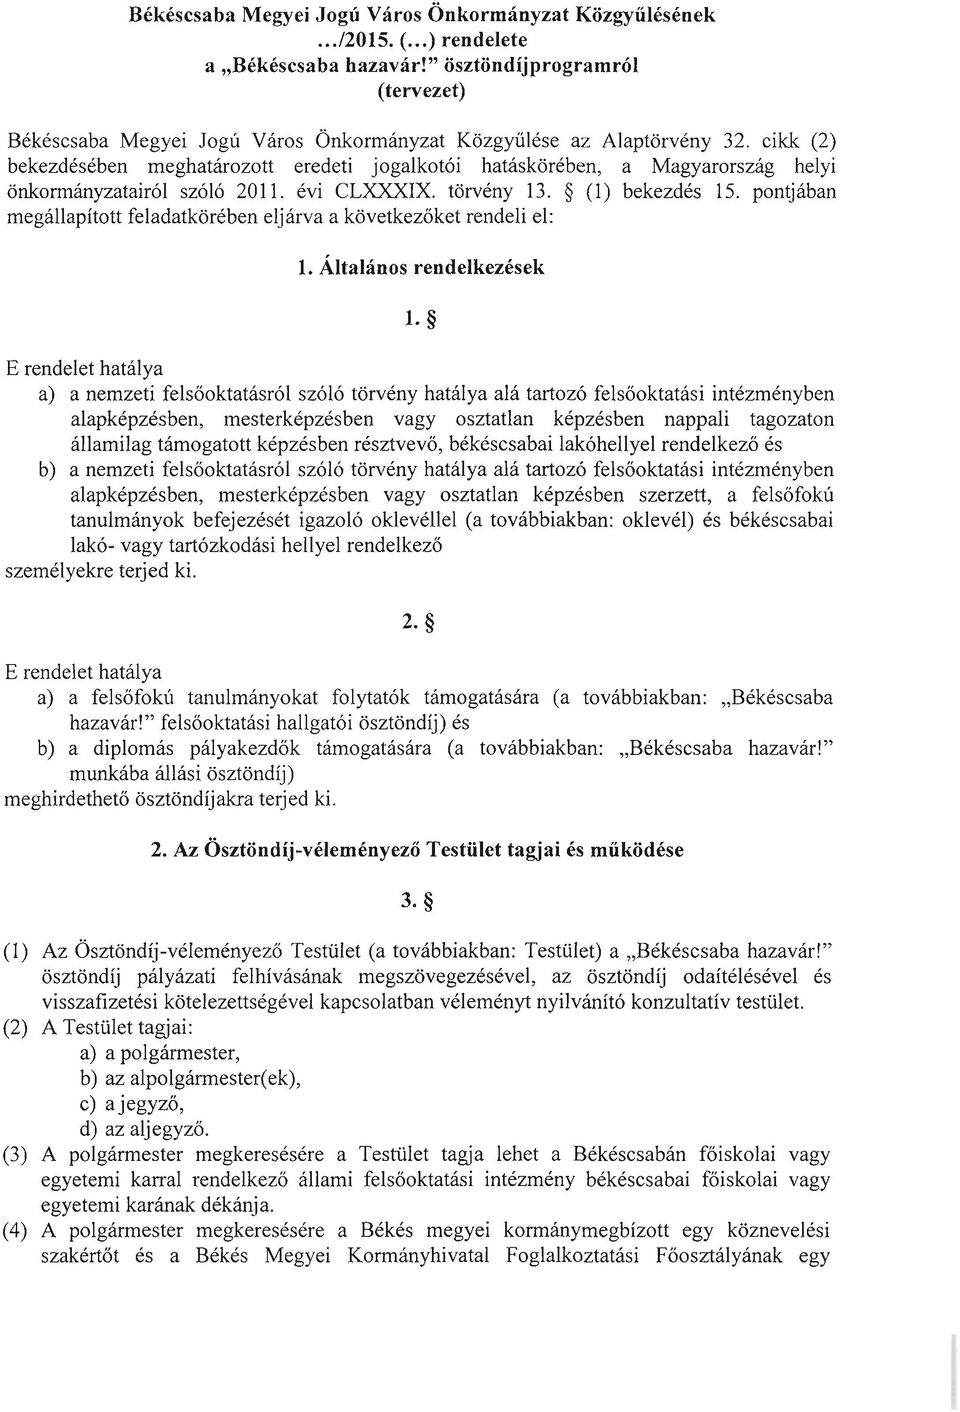 cikk (2) bekezdésében meghatározott eredeti jogalkotói hatáskörében, a Magyarország helyi önkormányzatairól szóló 2011. évi CLXXXIX. törvény 13. (1) bekezdés 15.